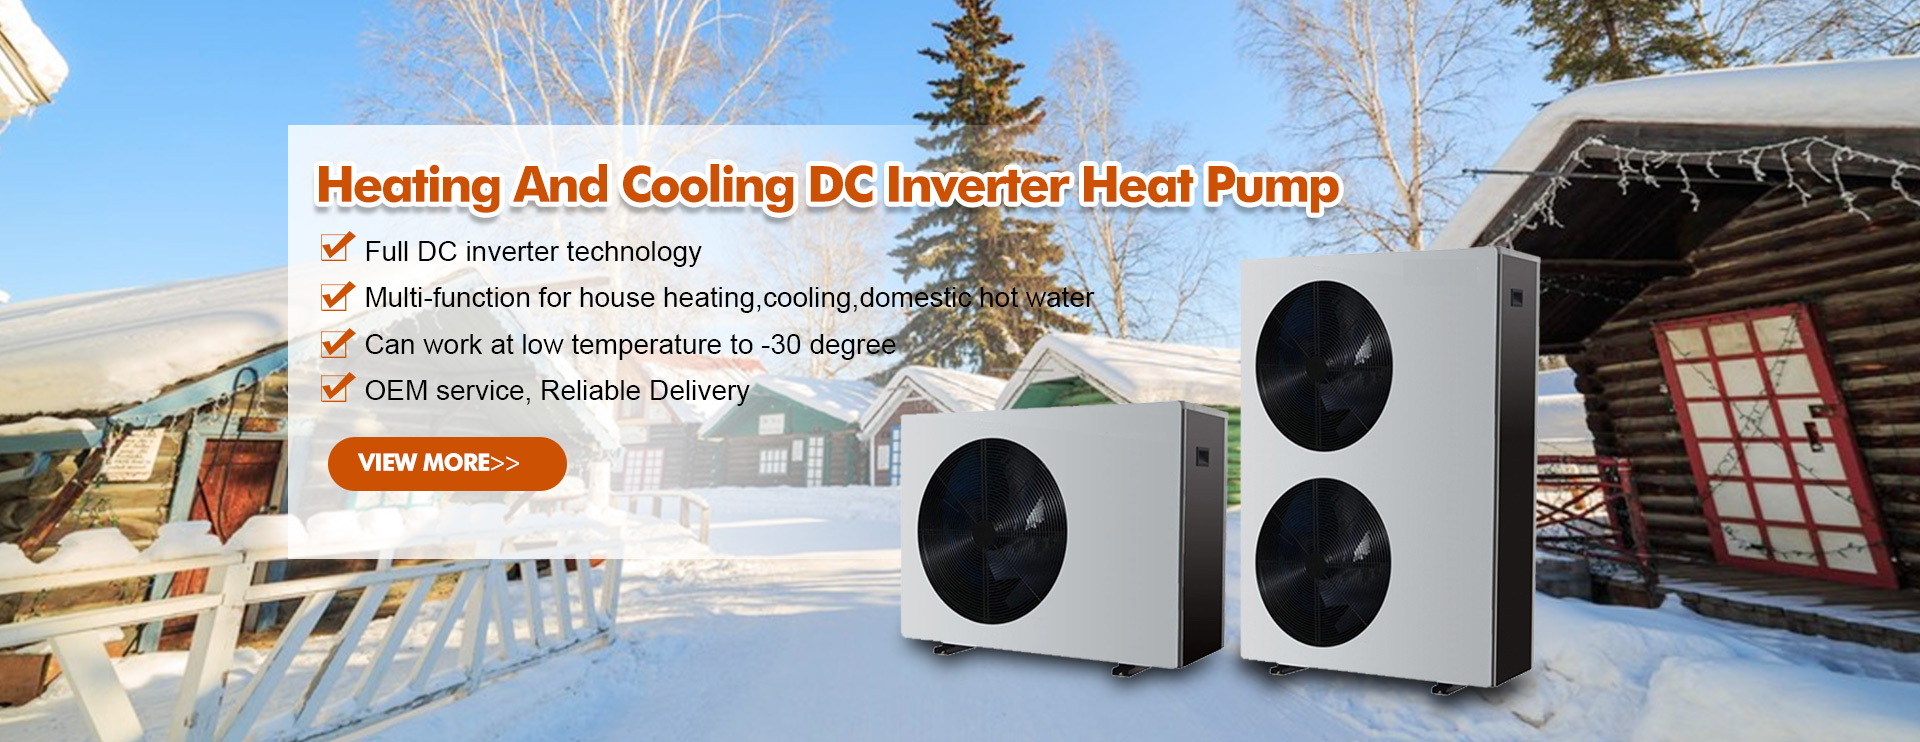 R32 كامل DC العاكس مصدر الهواء مضخة الحرارة لفصل الشتاء